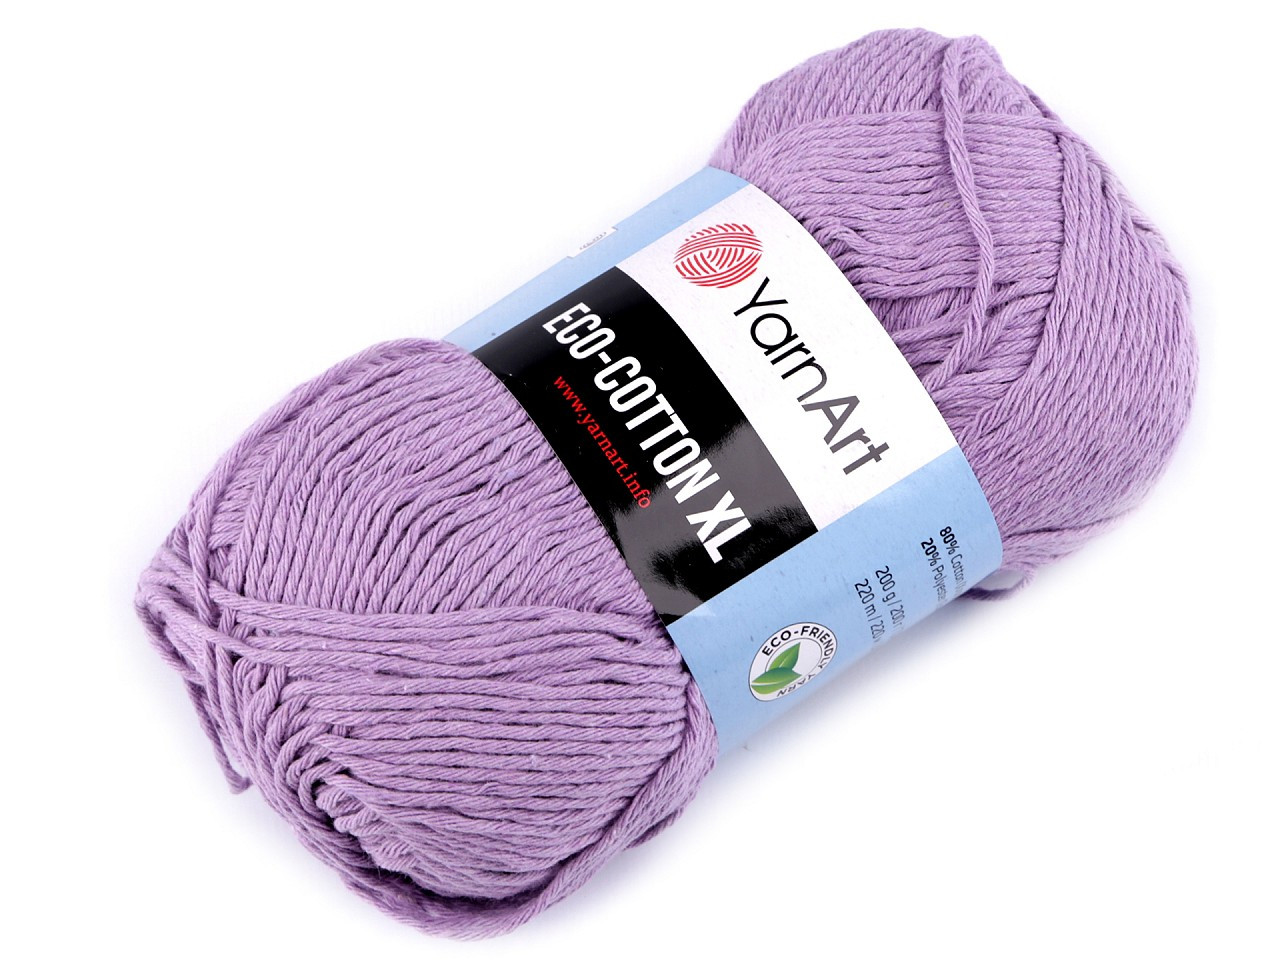 Pletací příze Eco - cotton XL 200 g, barva 15 (771) fialová lila